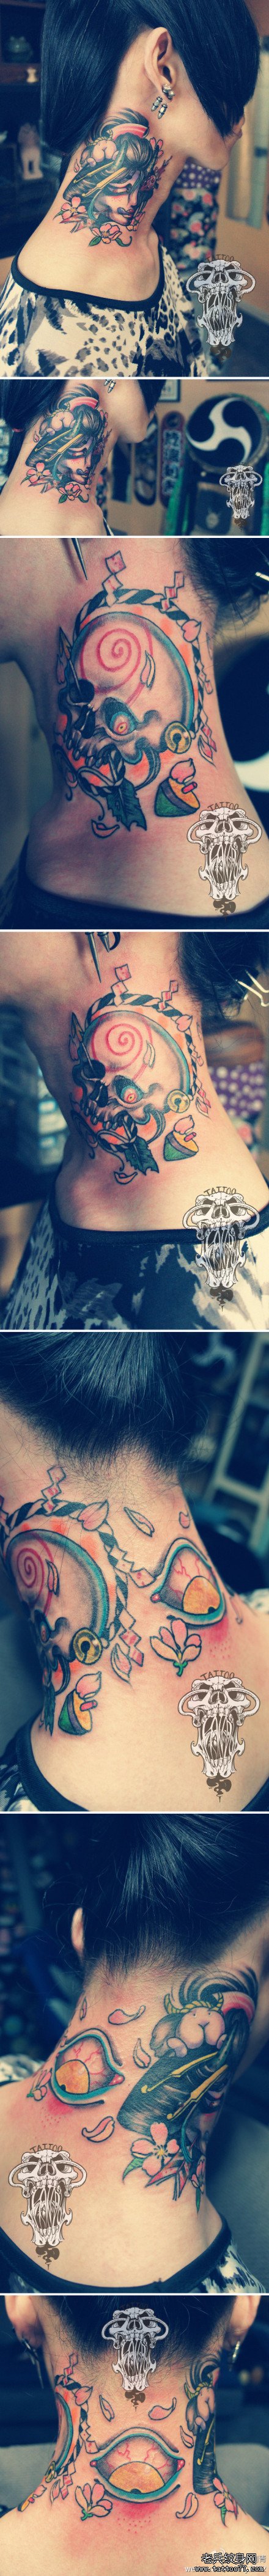 脖子处潮流经典的艺妓骷髅与眼睛纹身图案